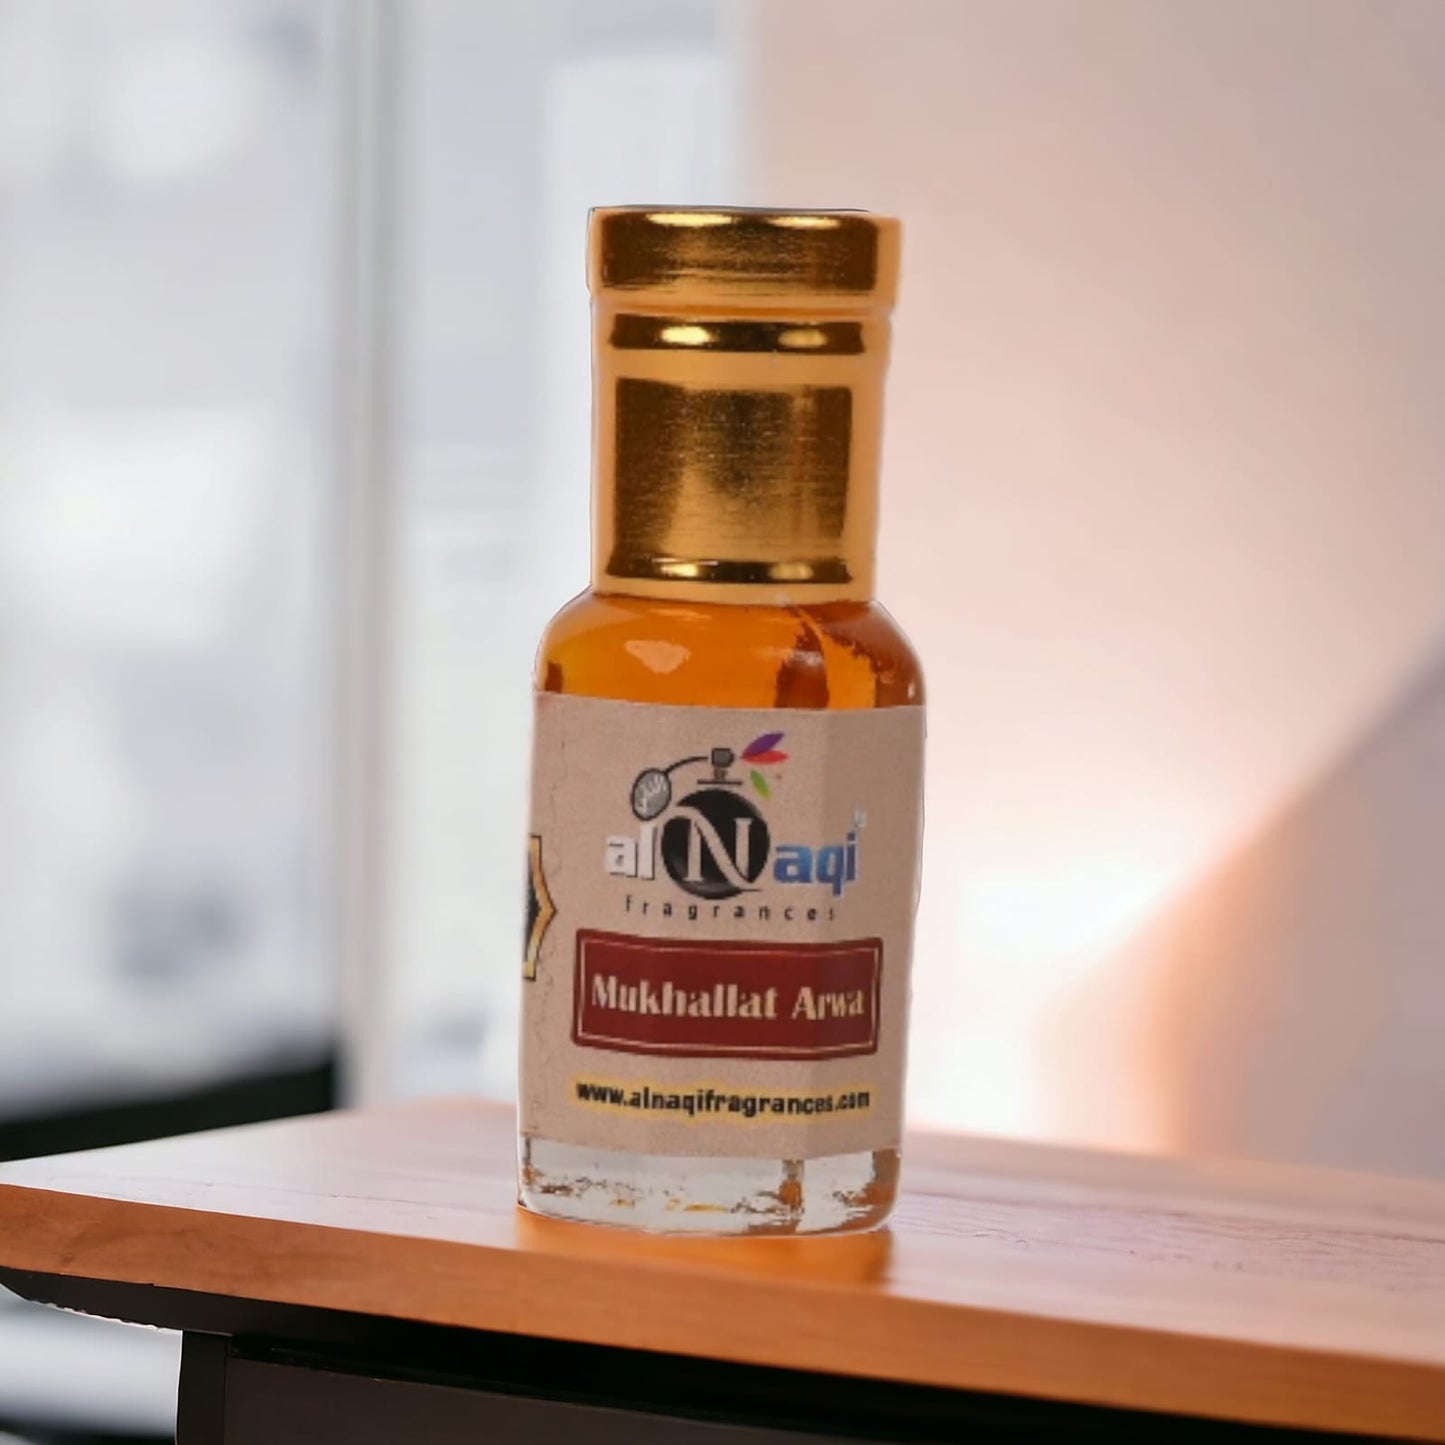 Alnaqi Arabian Musk Fragrance Bottle